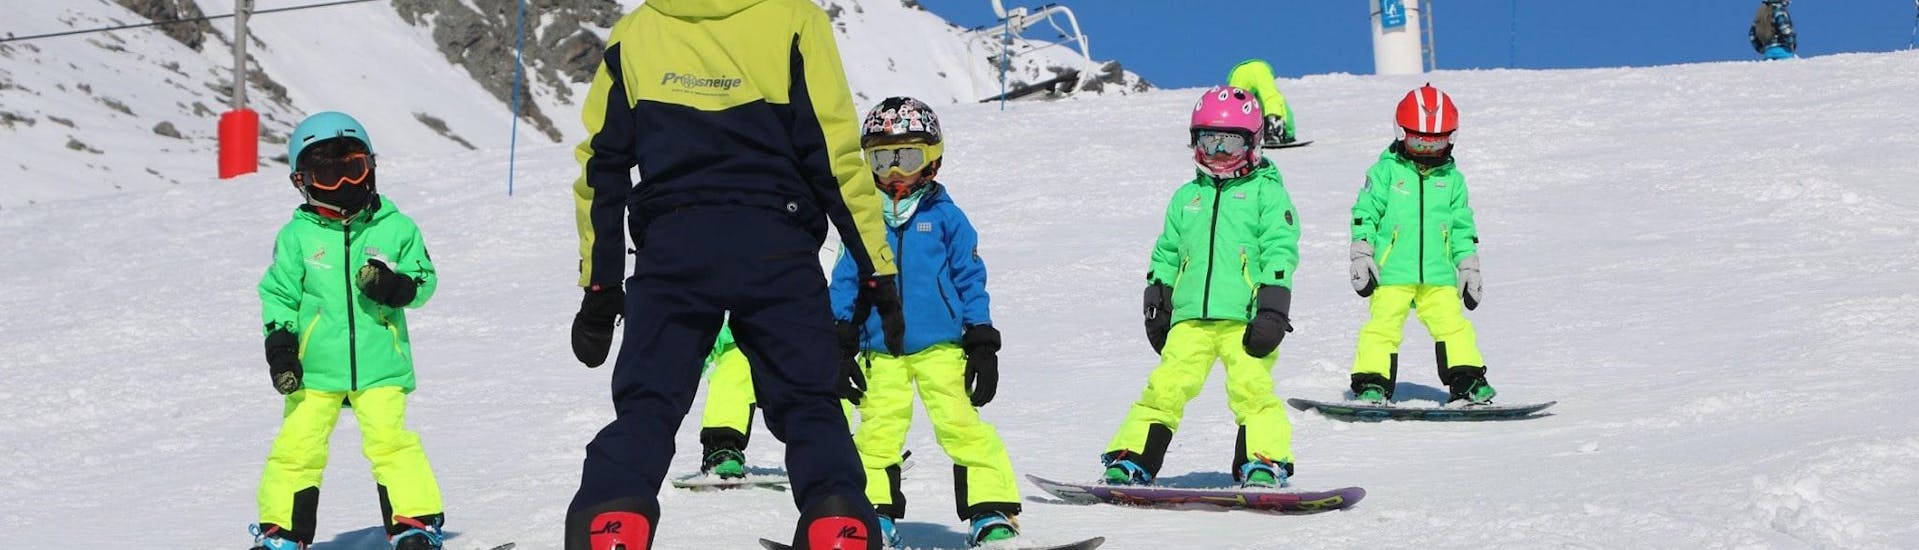 Un moniteur de ski de l´école de ski Prosneige Val Thorens & Les Menuires enseigne aux enfants en souriant pendant les Cours de snowboard pour Enfants (5-13 ans).